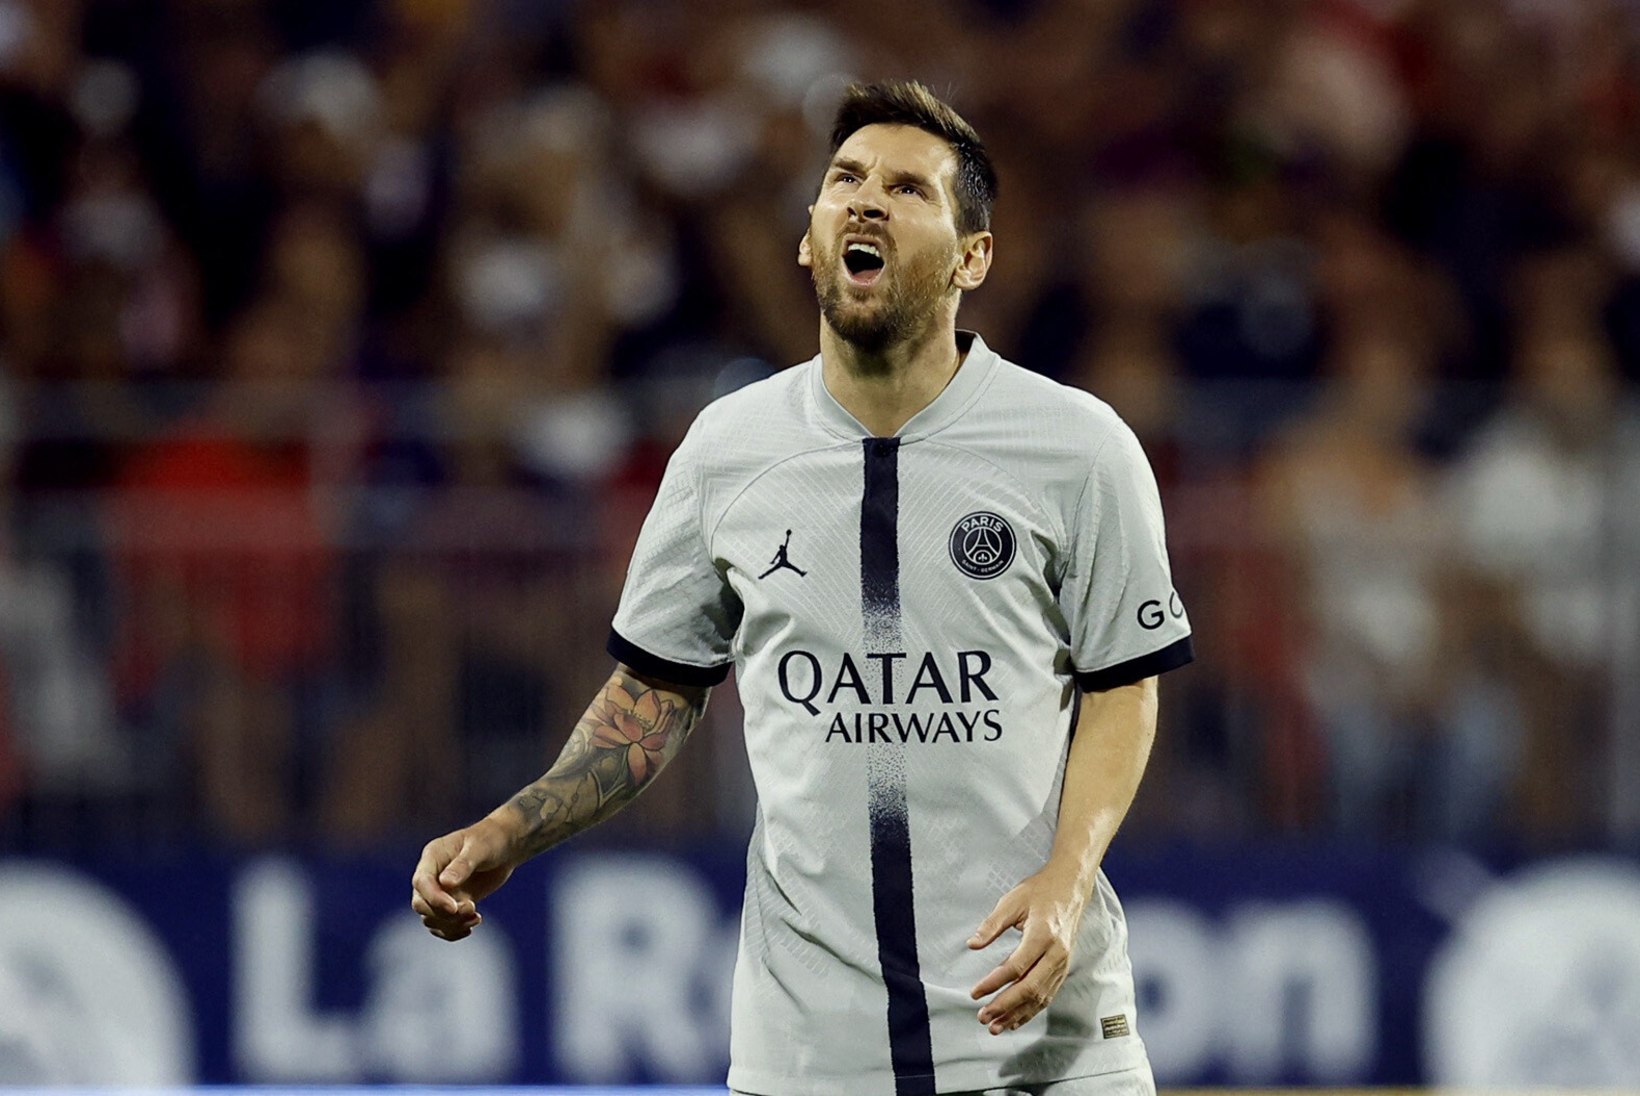 AJASTU LÕPP: Lionel Messi ei kuulu enam maailma parimate jalgpallurite eksklusiivsesse nimekirja